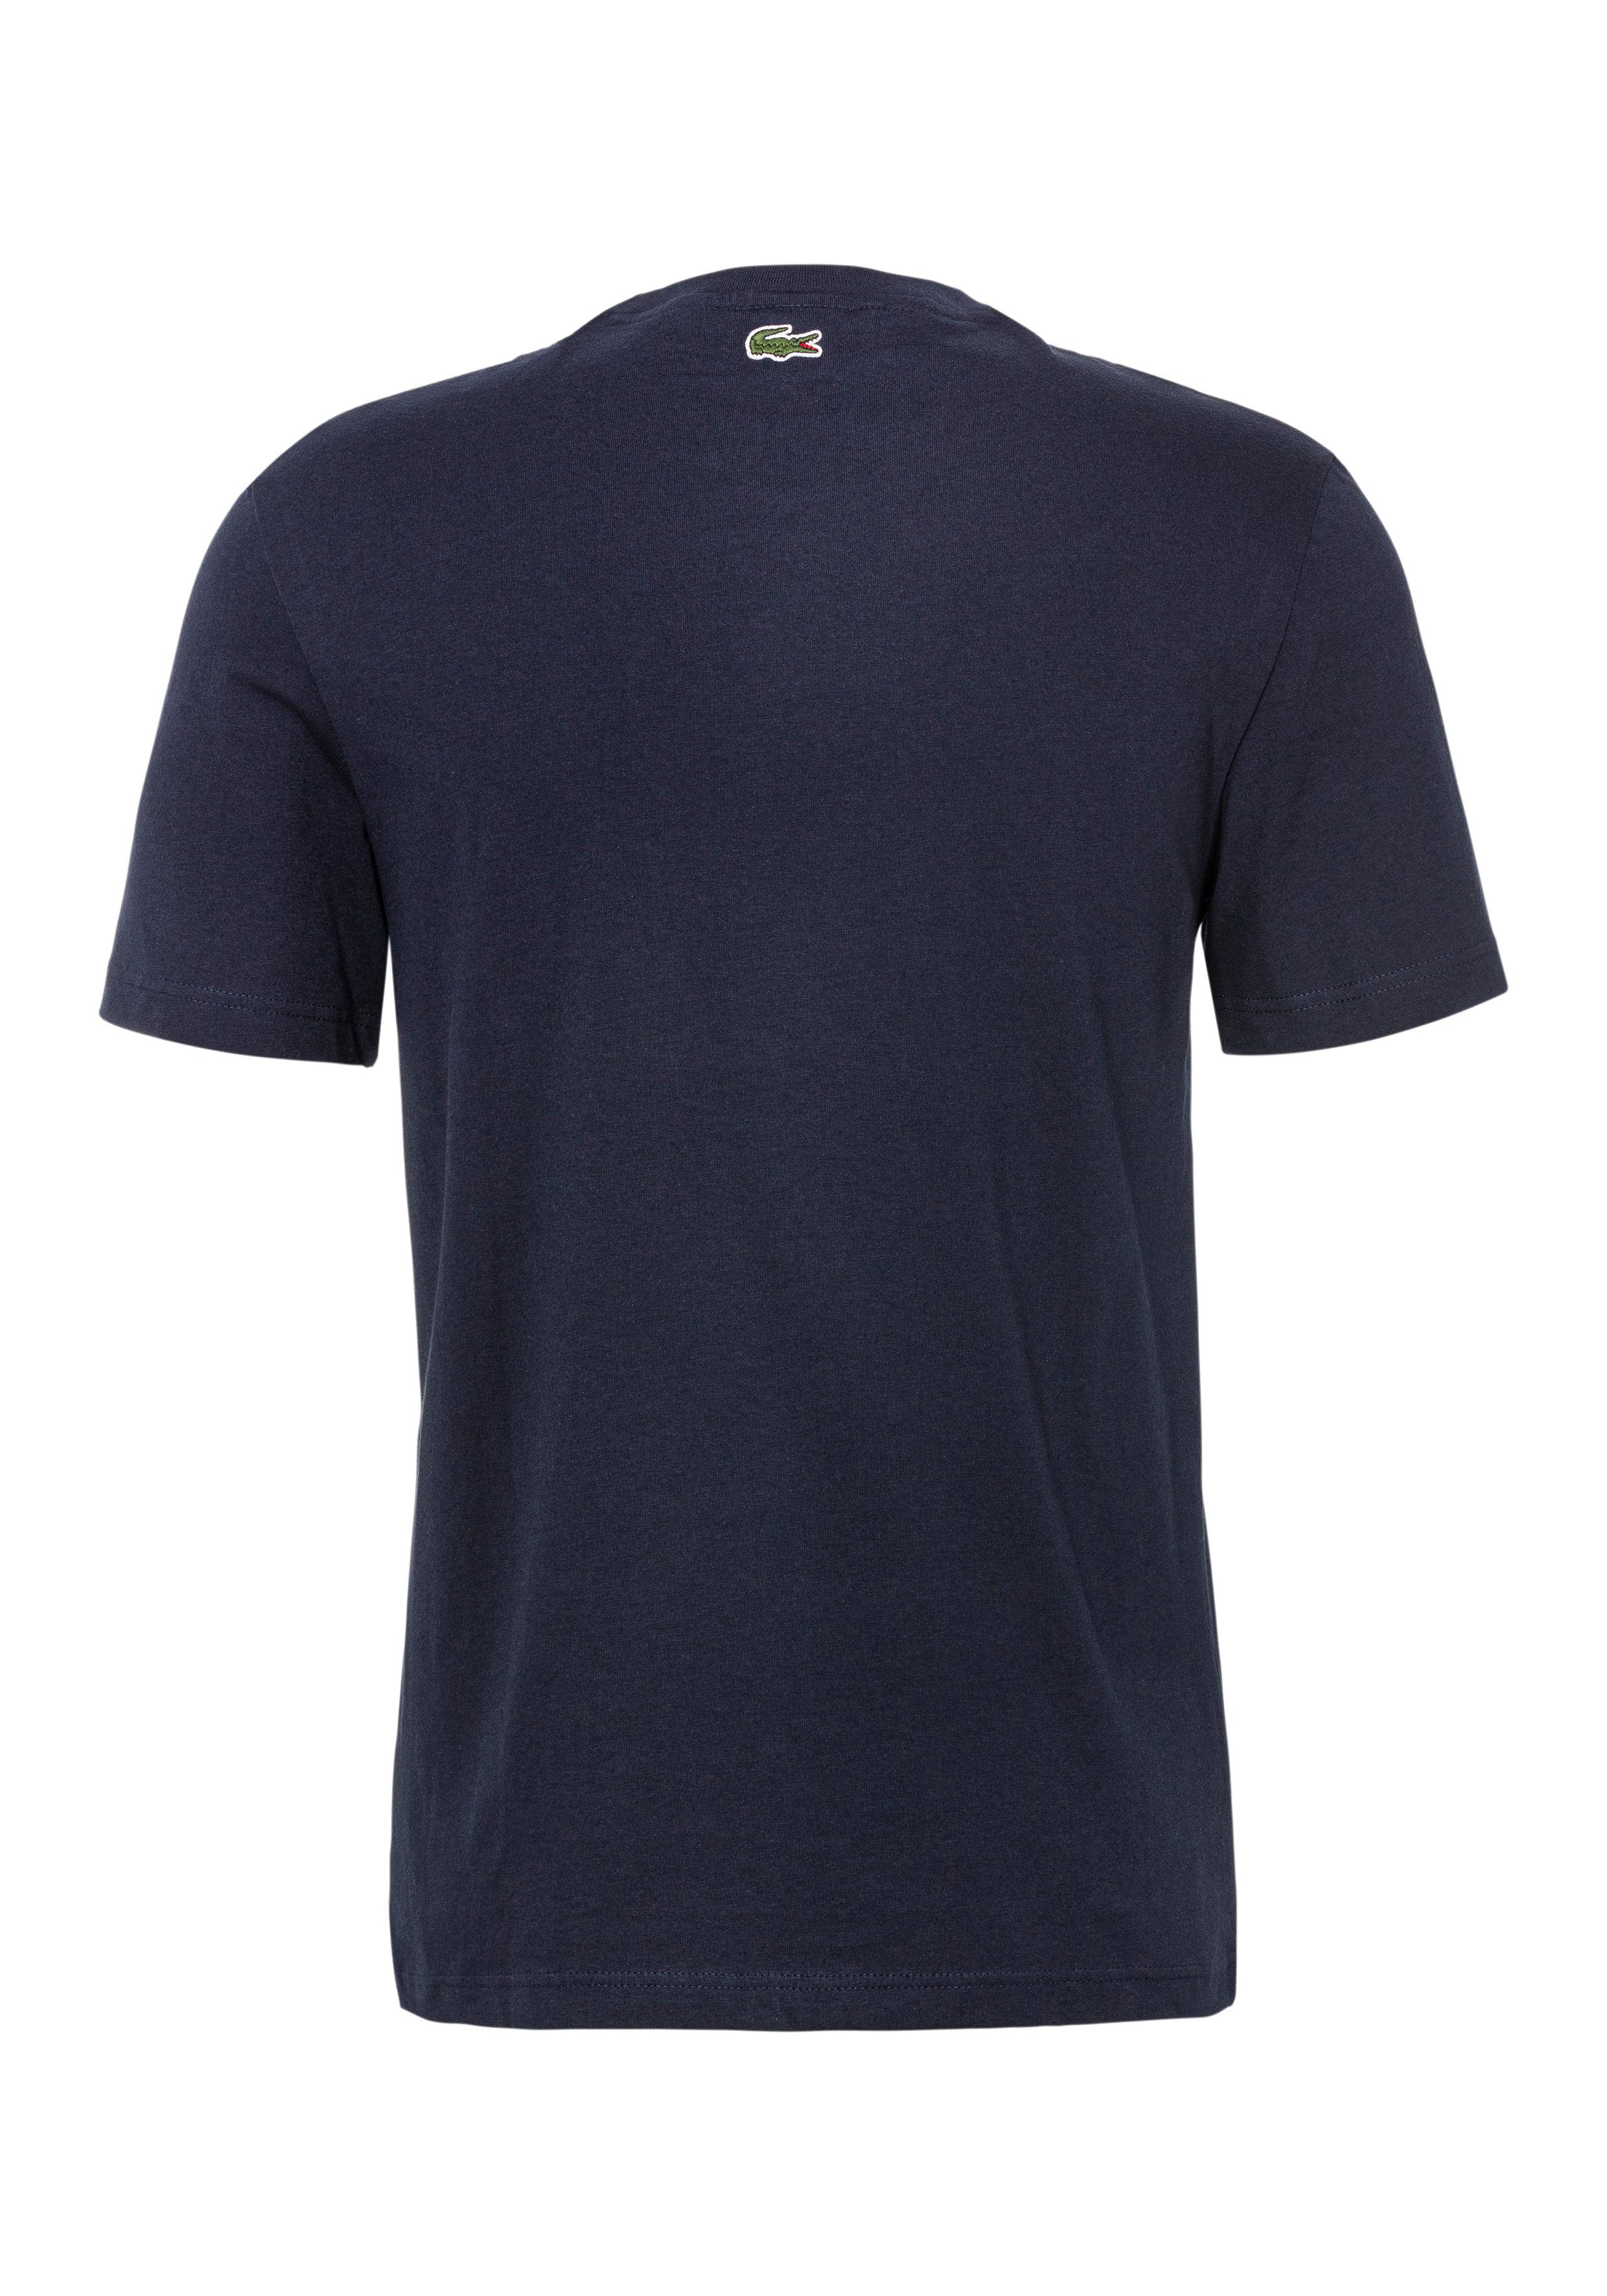 NAVY T-Shirt Brust auf Lacoste der Print T-SHIRT BLUE Lacoste mit